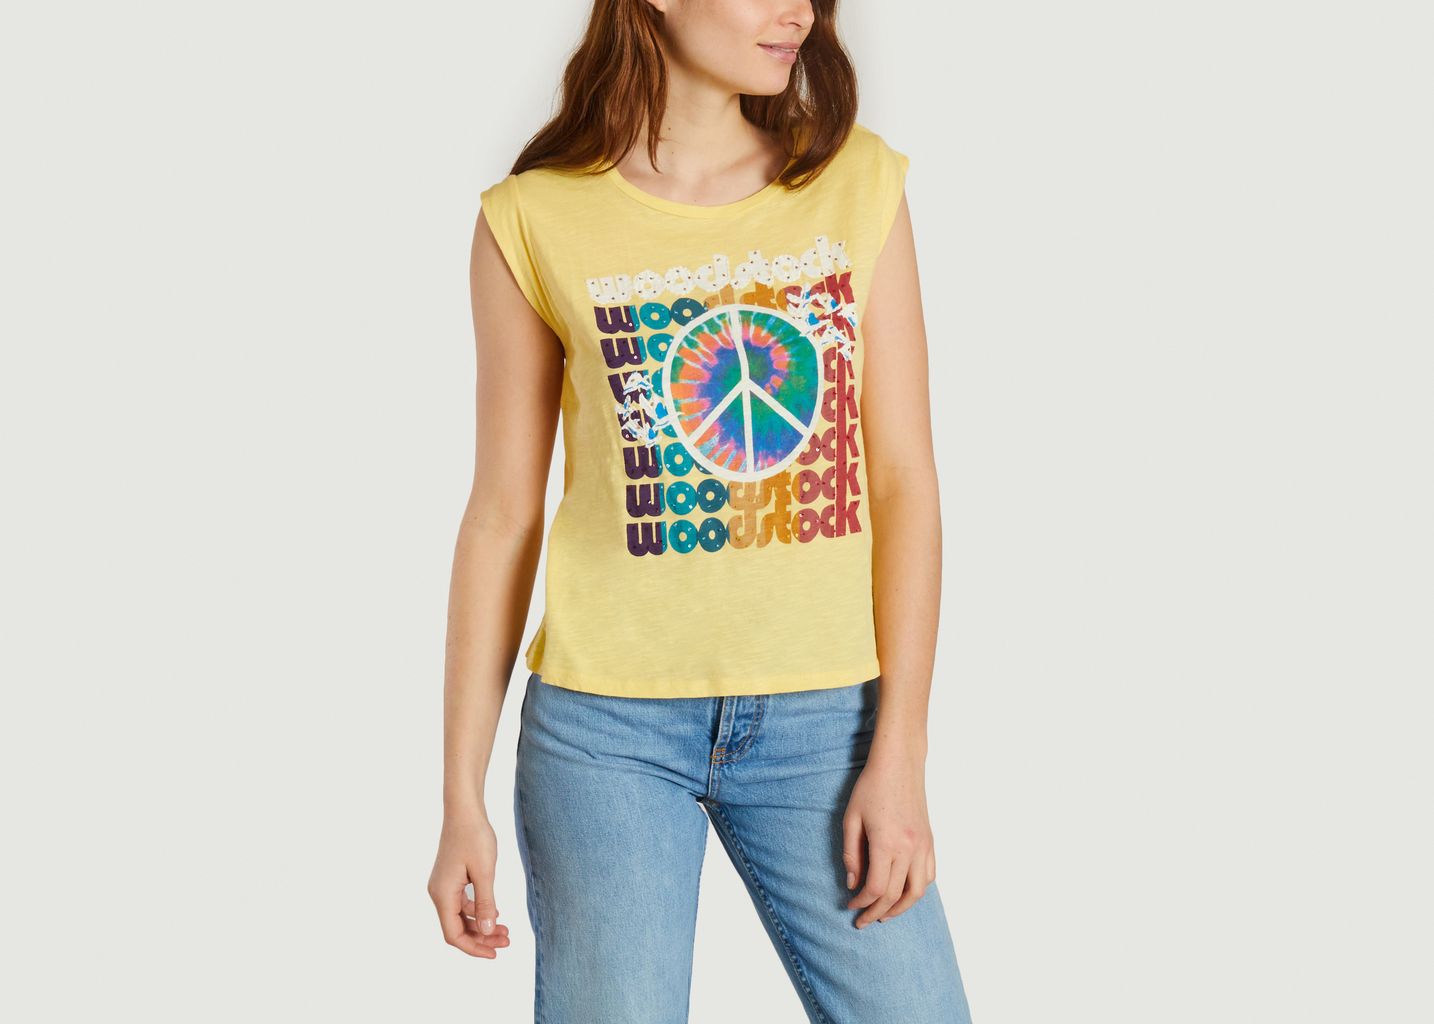 Hippie teeshirt - Five